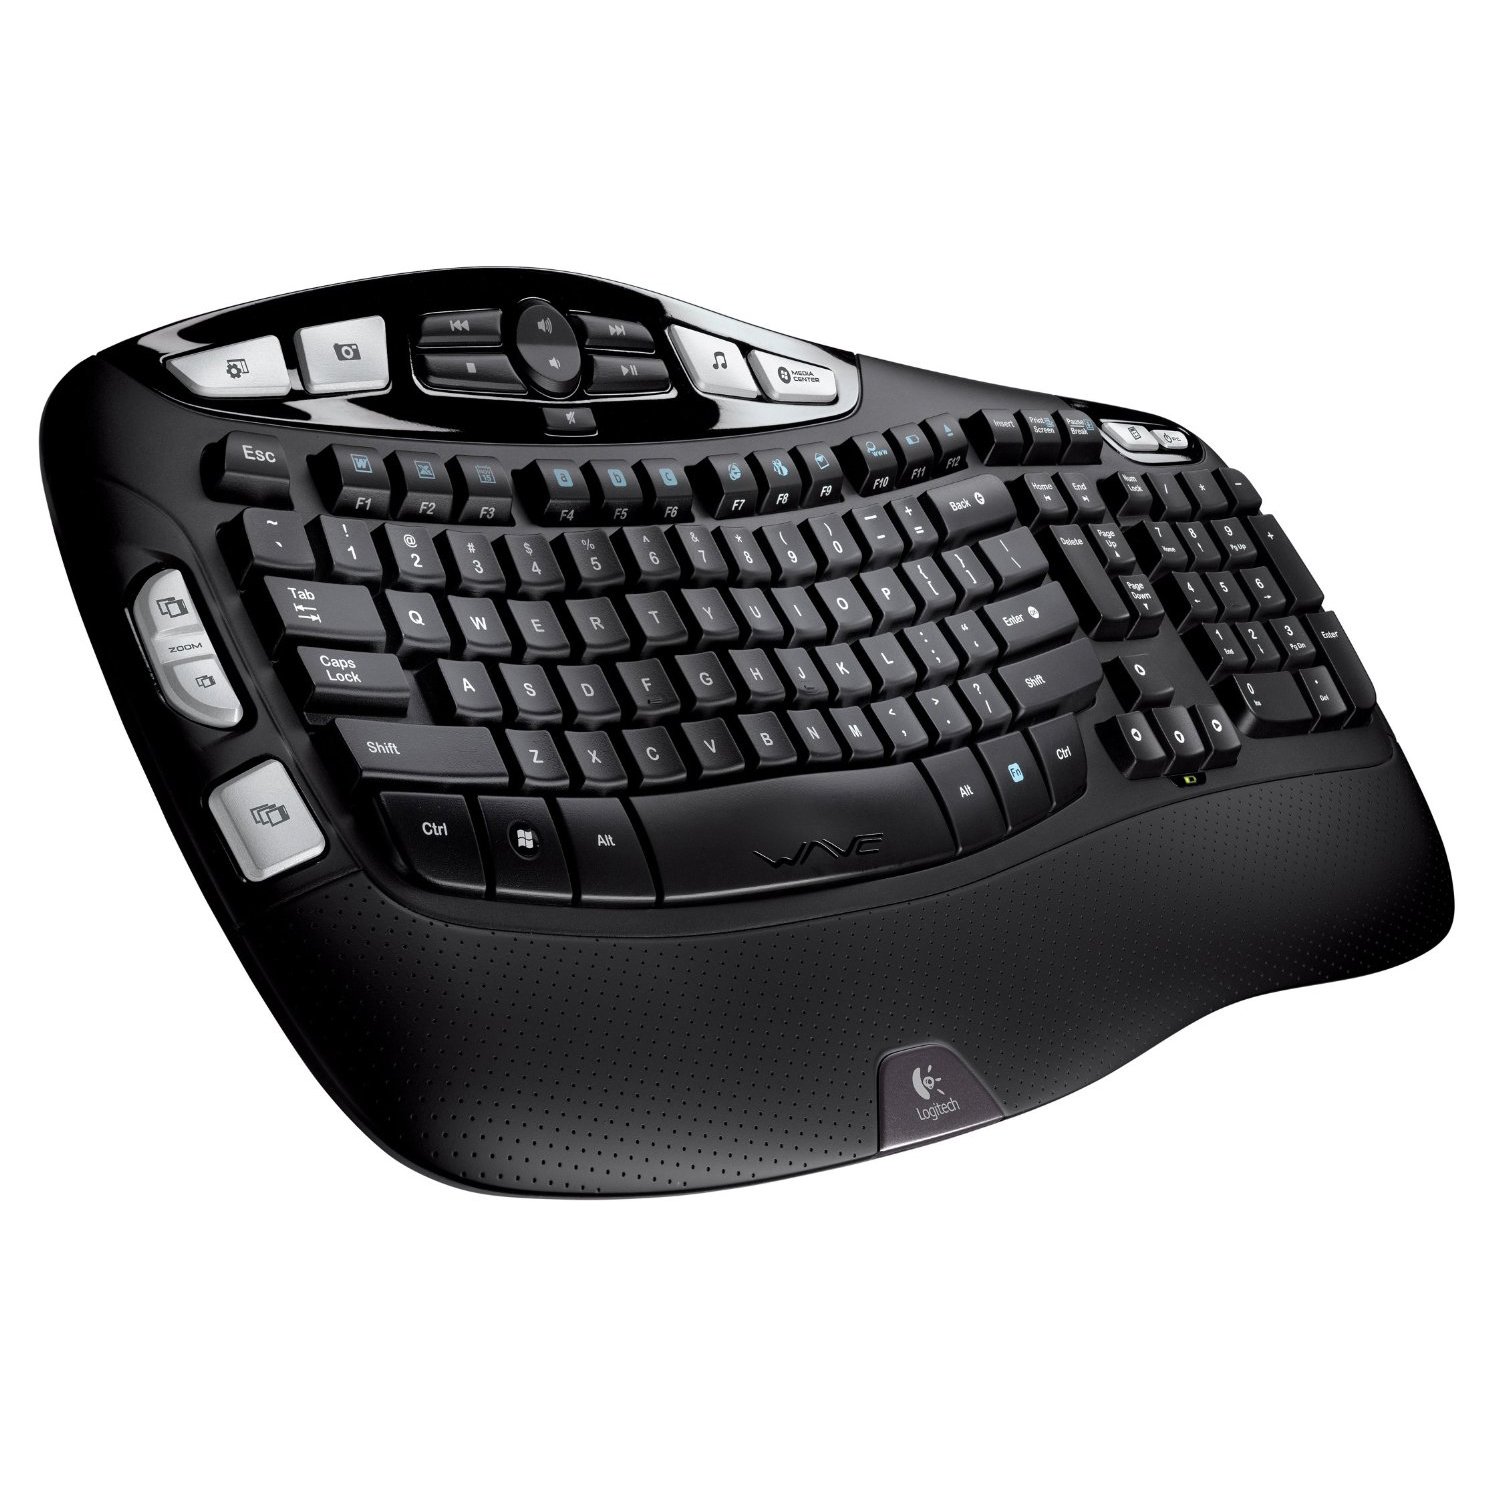 Logitech Cordless Desktop Wave Pro Keyboard and Laser Mouse (Black)